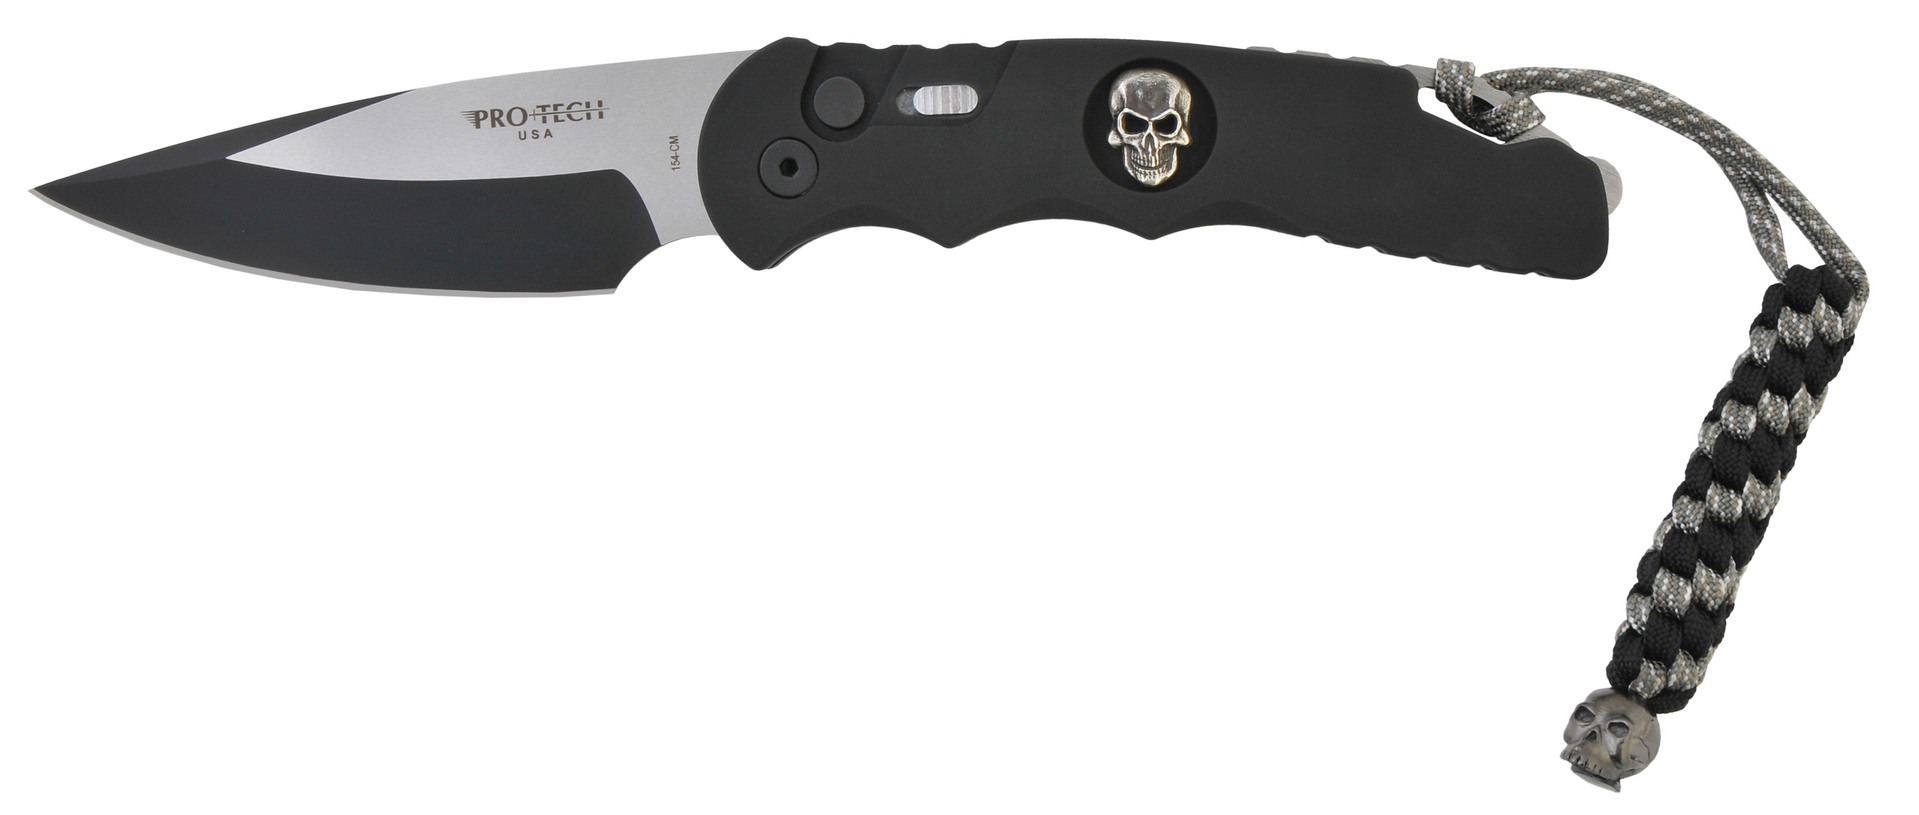 Нож Pro-Tech Doru Skull Limited складной сталь 154CM алюмини - фото 1